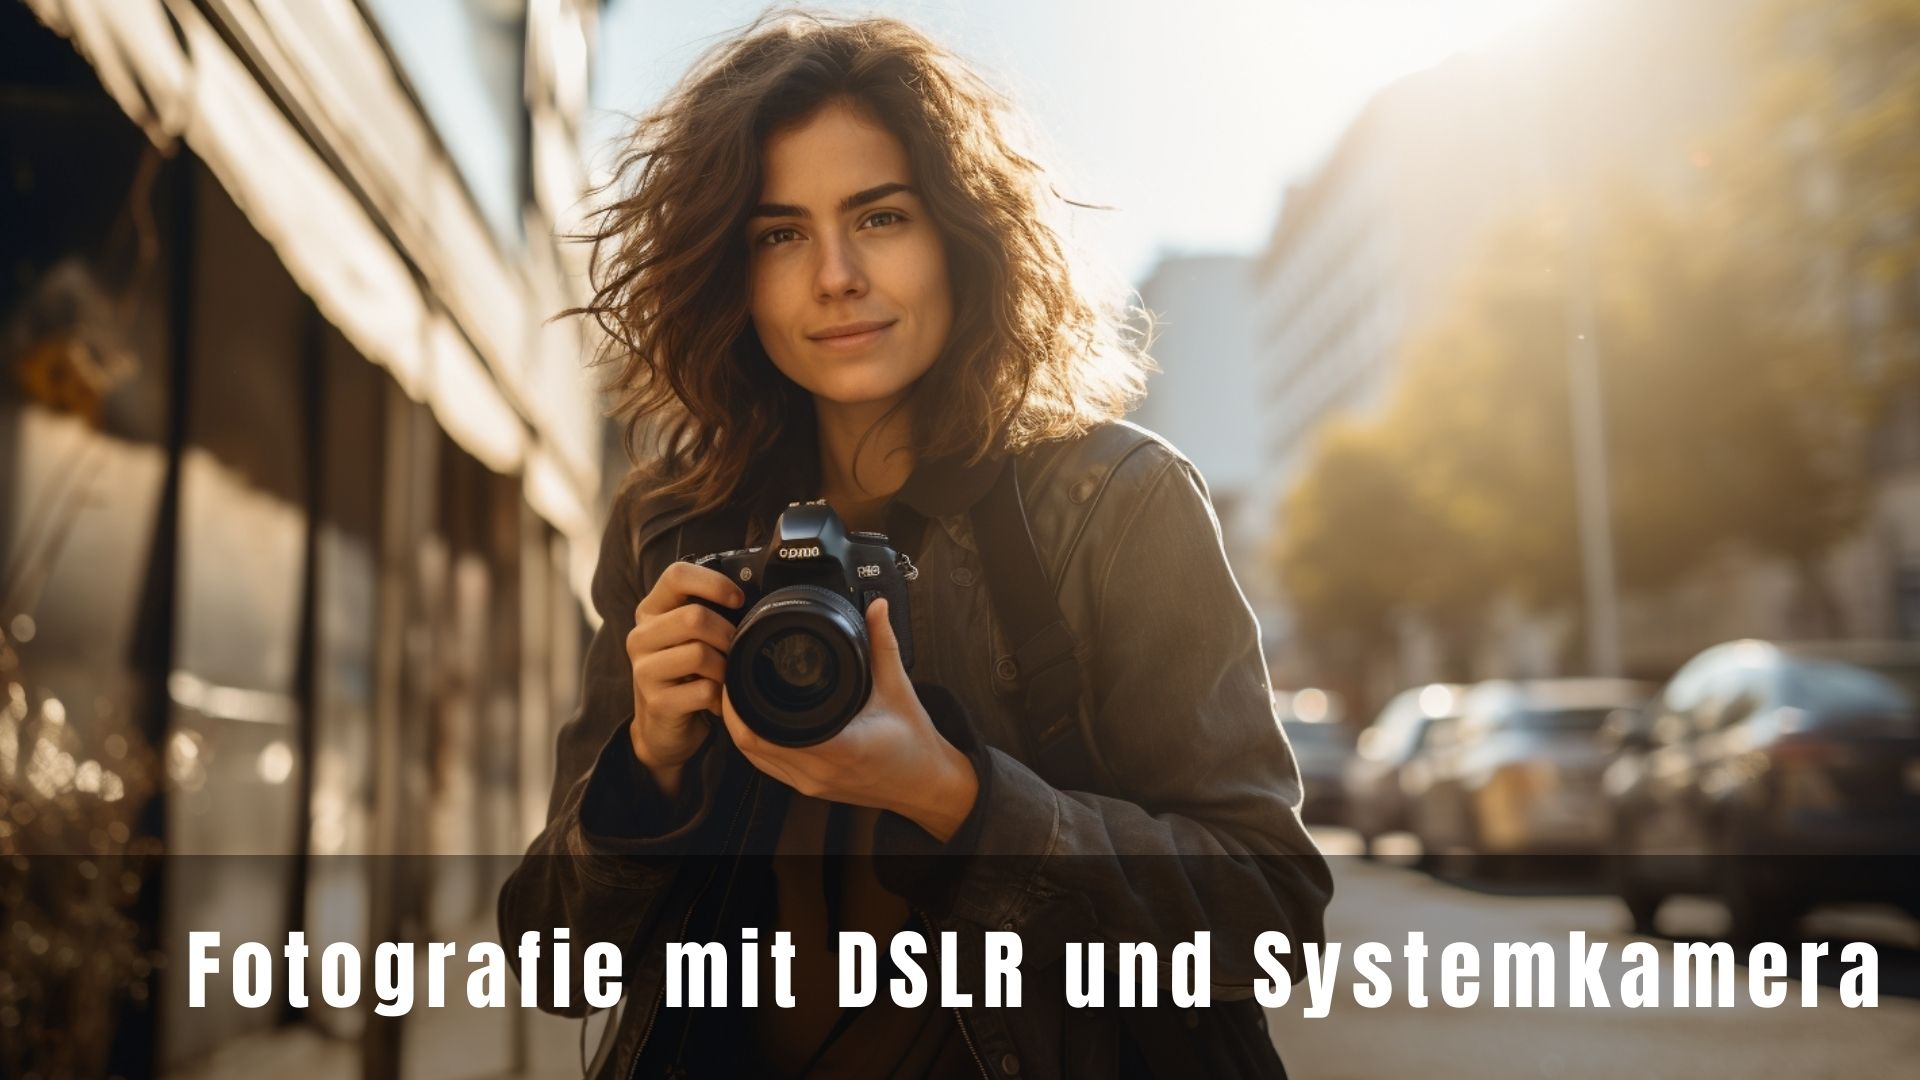 Fotografie mit DSLR und Systemkamera | Onlineworkshop